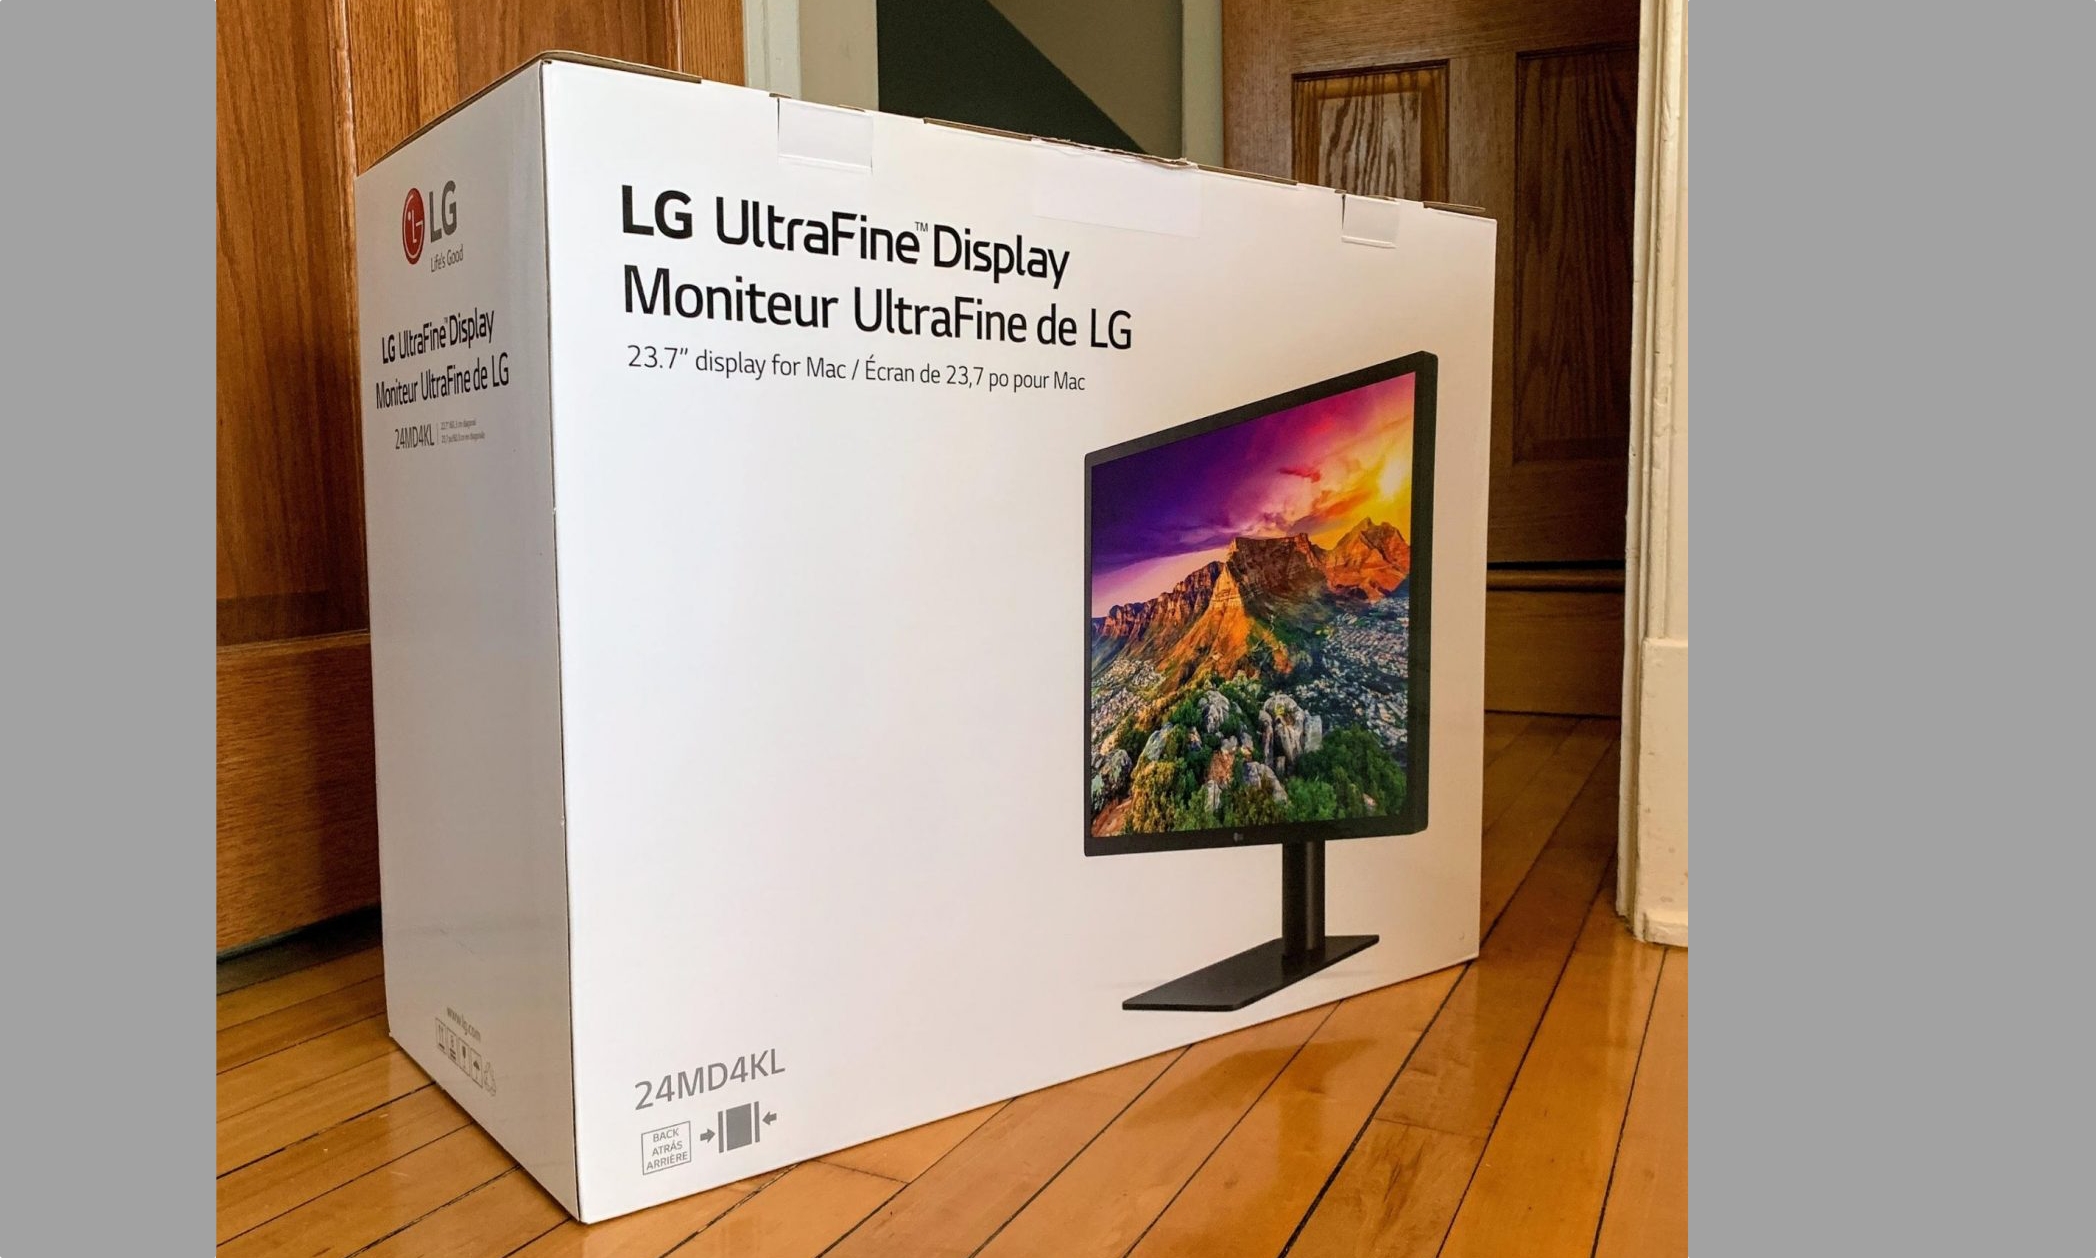 LG 23.7 Inch UltraFine Display in Box (via TidBits)